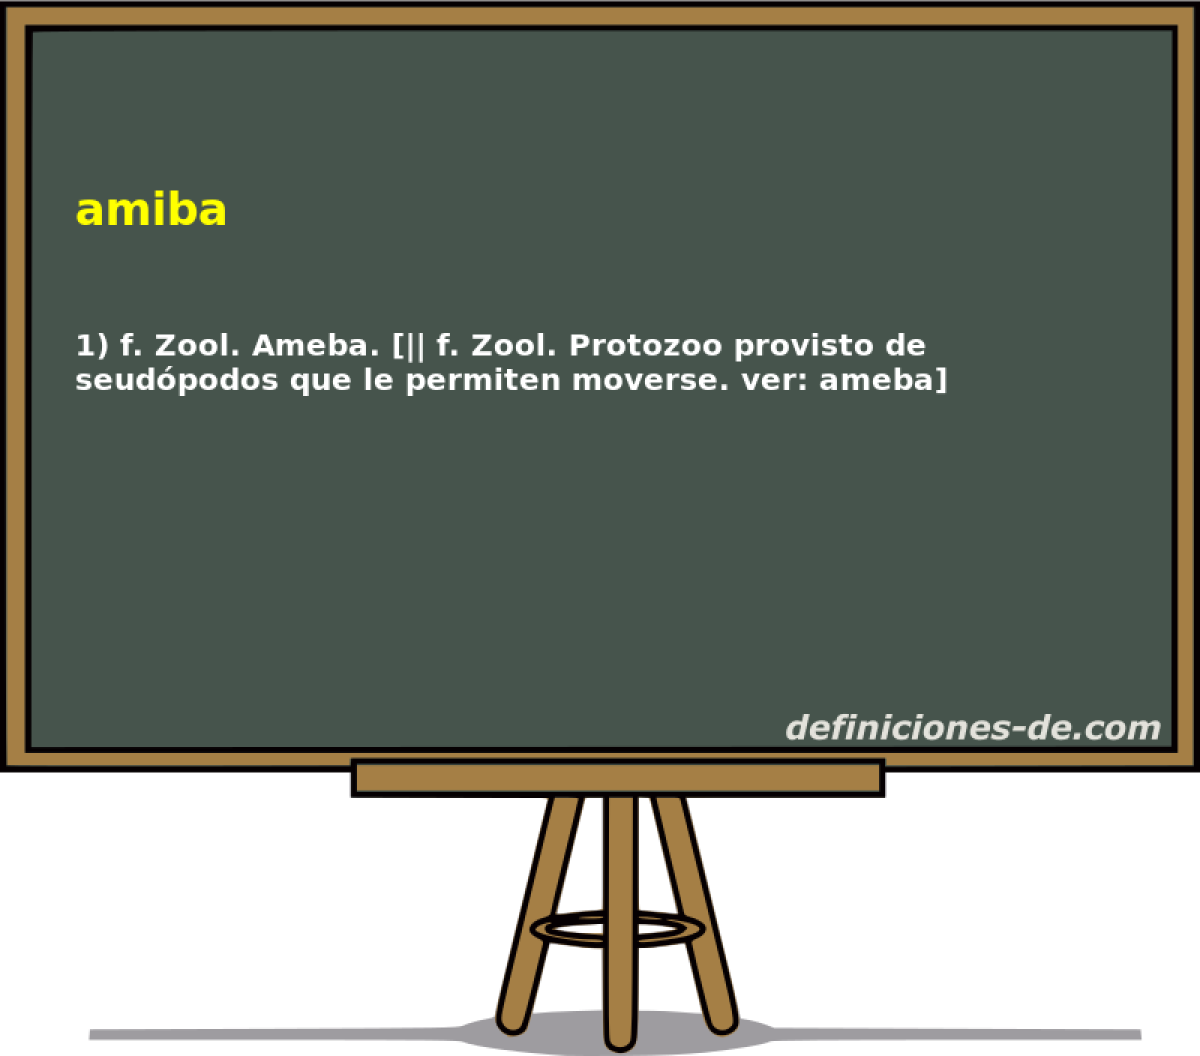 amiba 